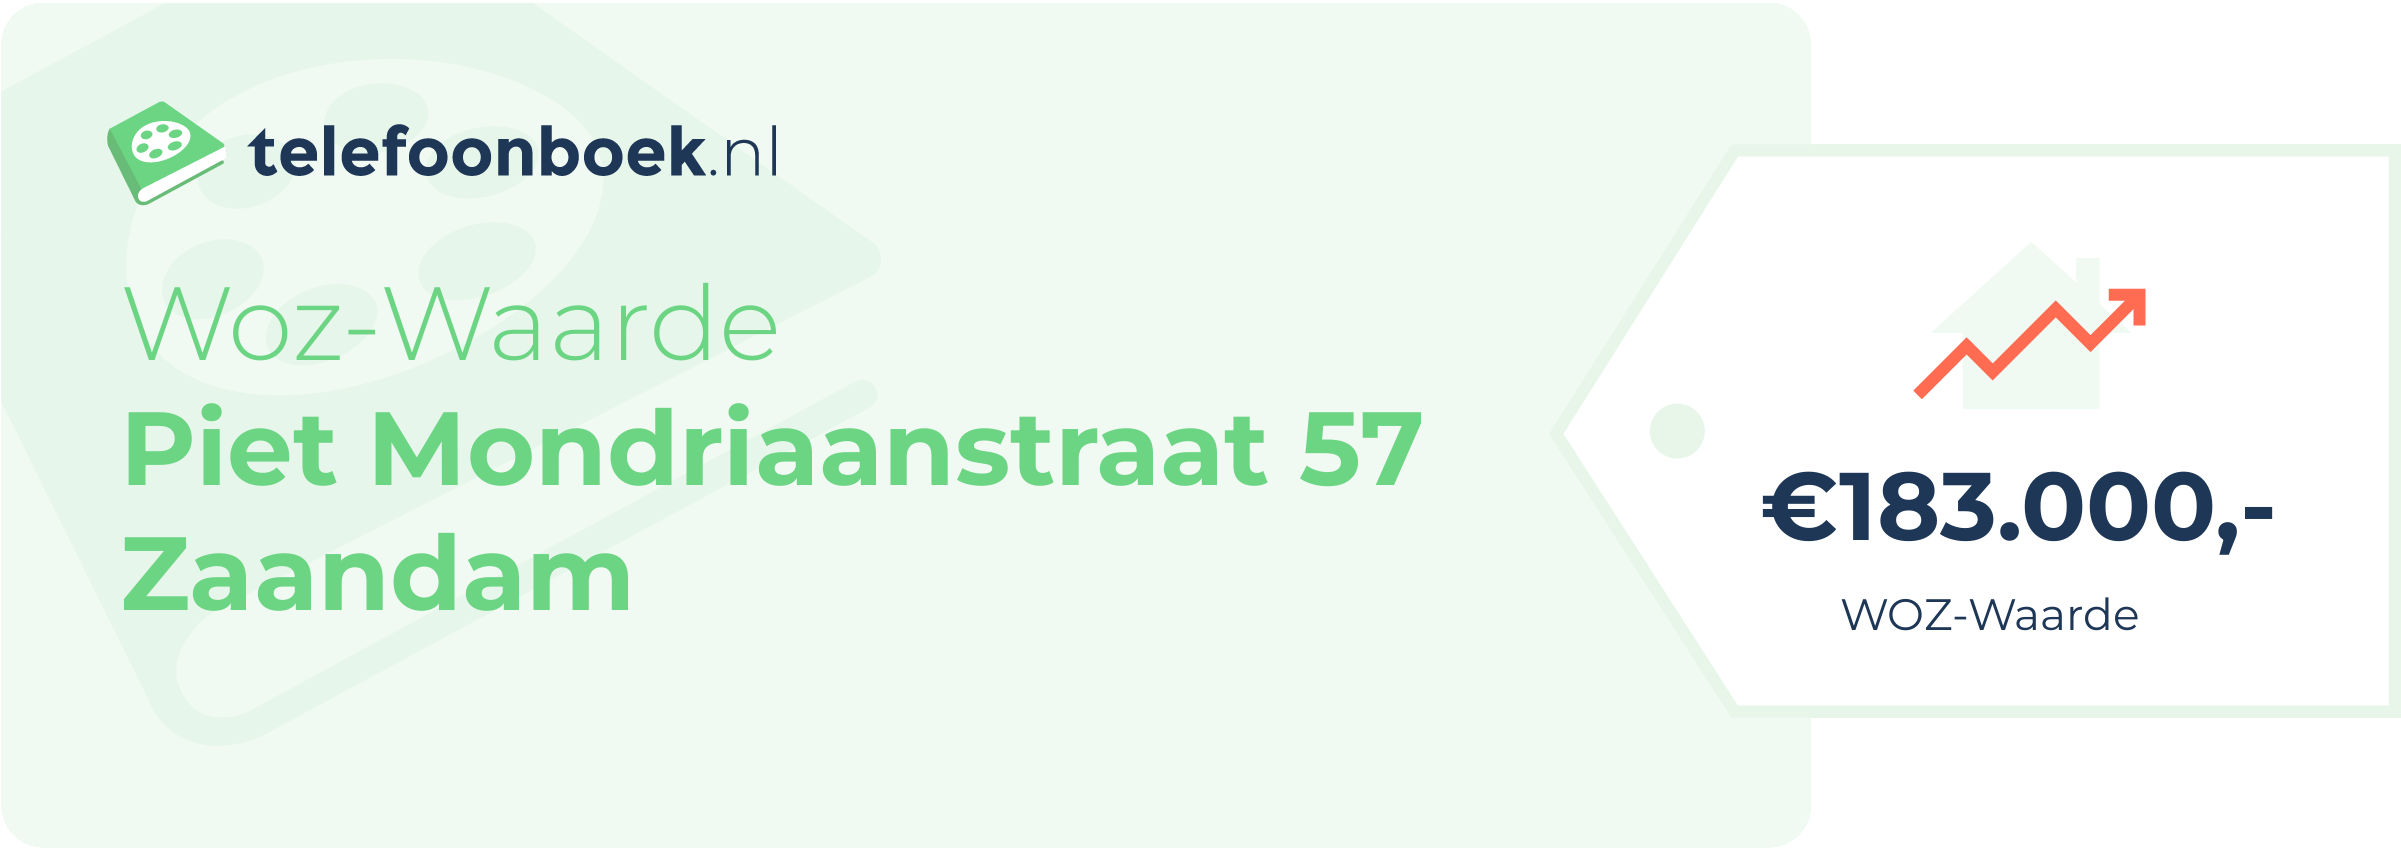 WOZ-waarde Piet Mondriaanstraat 57 Zaandam